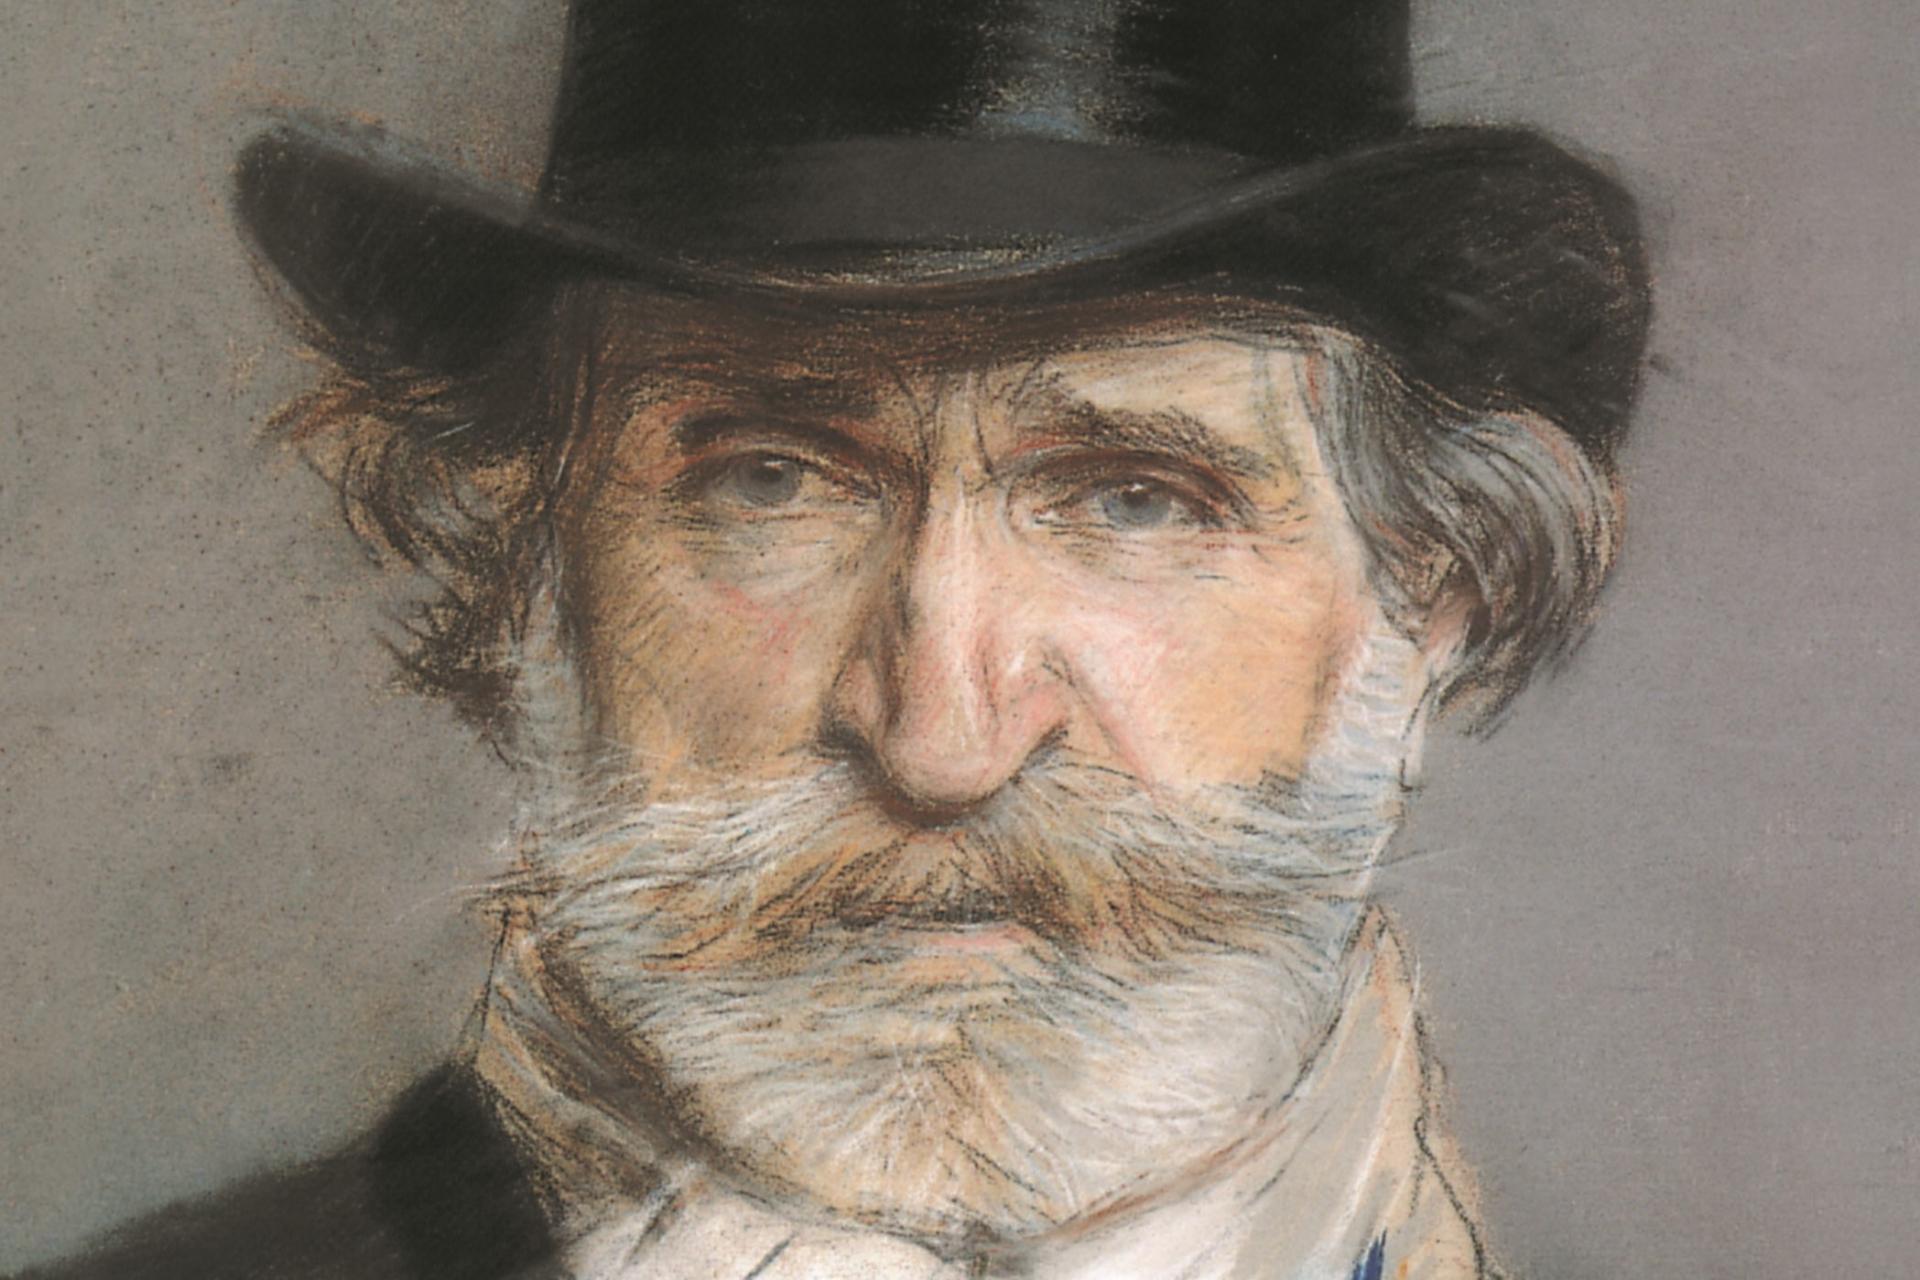 Giuseppe Verdi (dipinto di Giovanni Boldini)